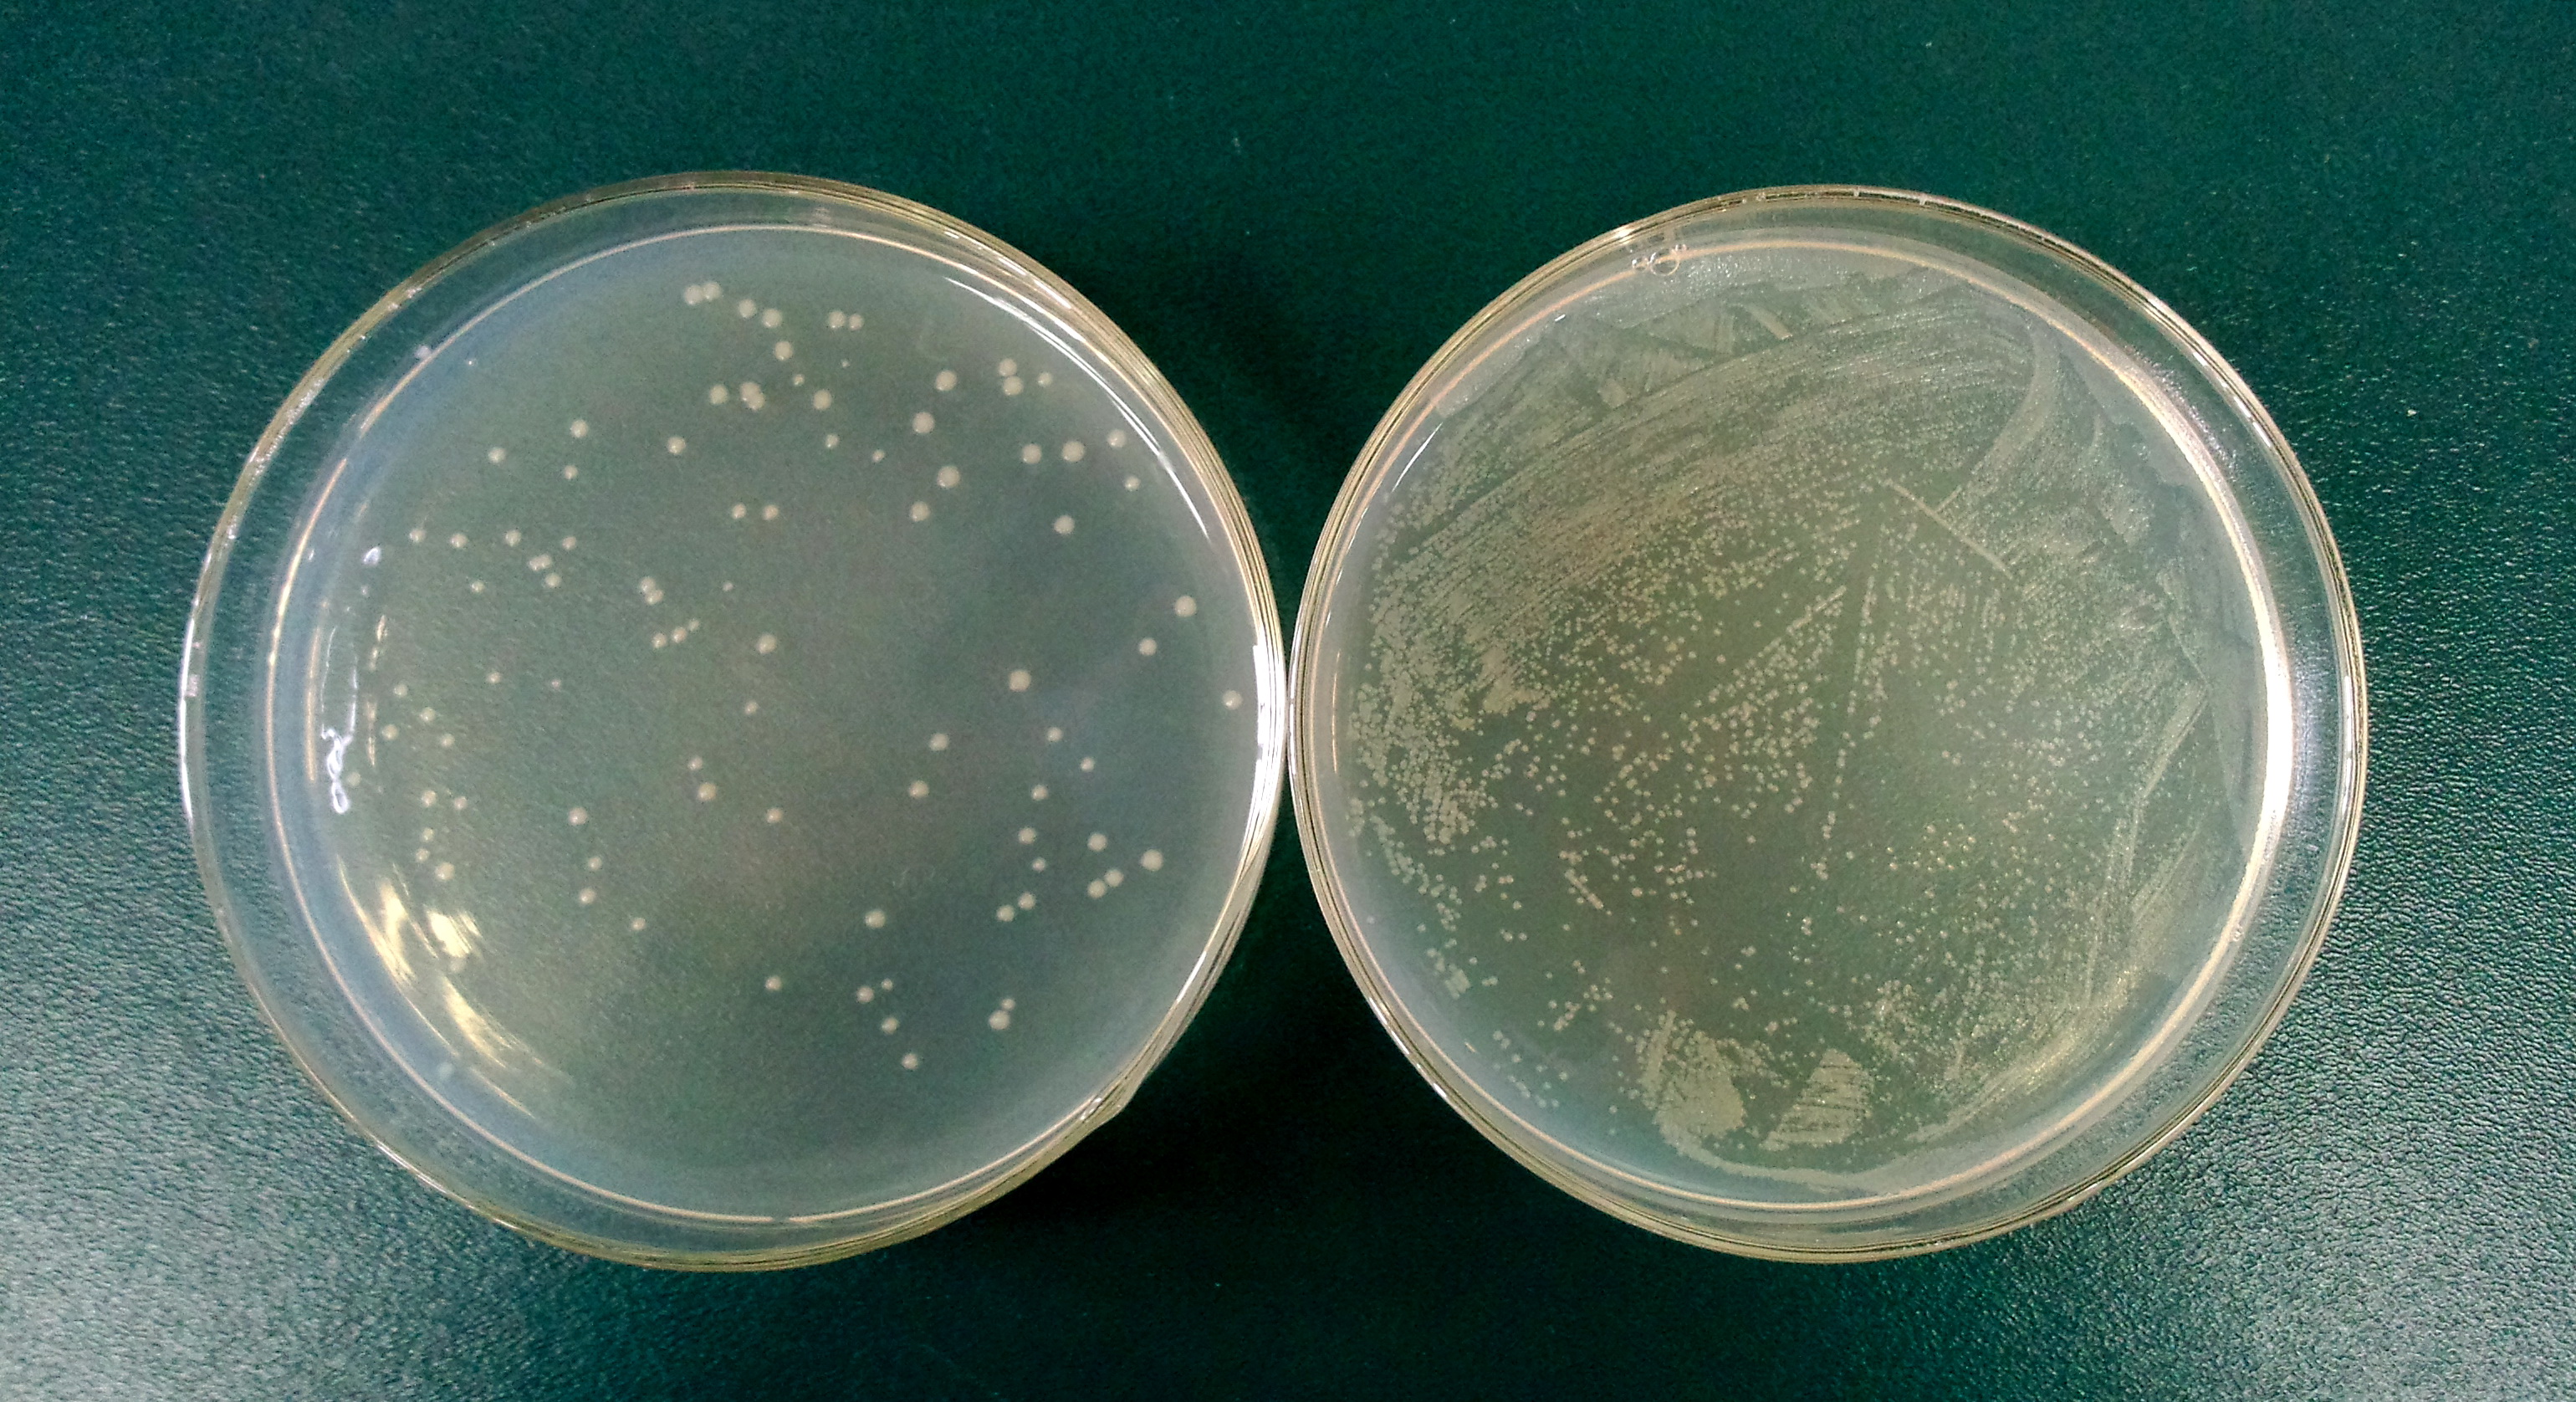 ZJU-Bacterial-Ghost-Results-5.jpg